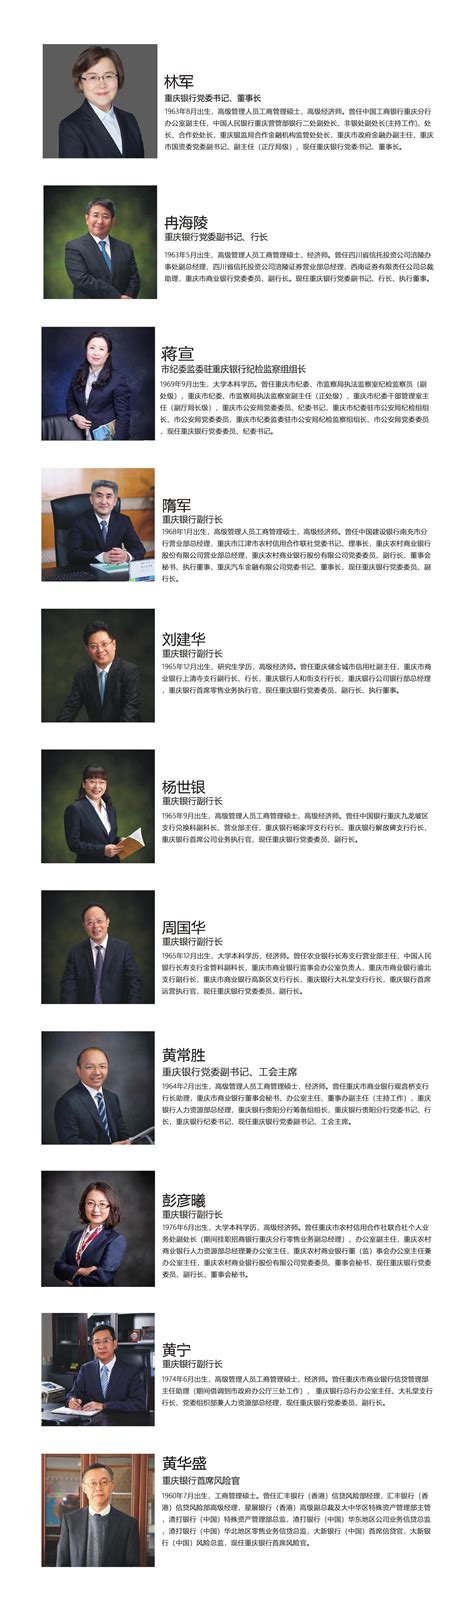 重庆银行——管理层介绍